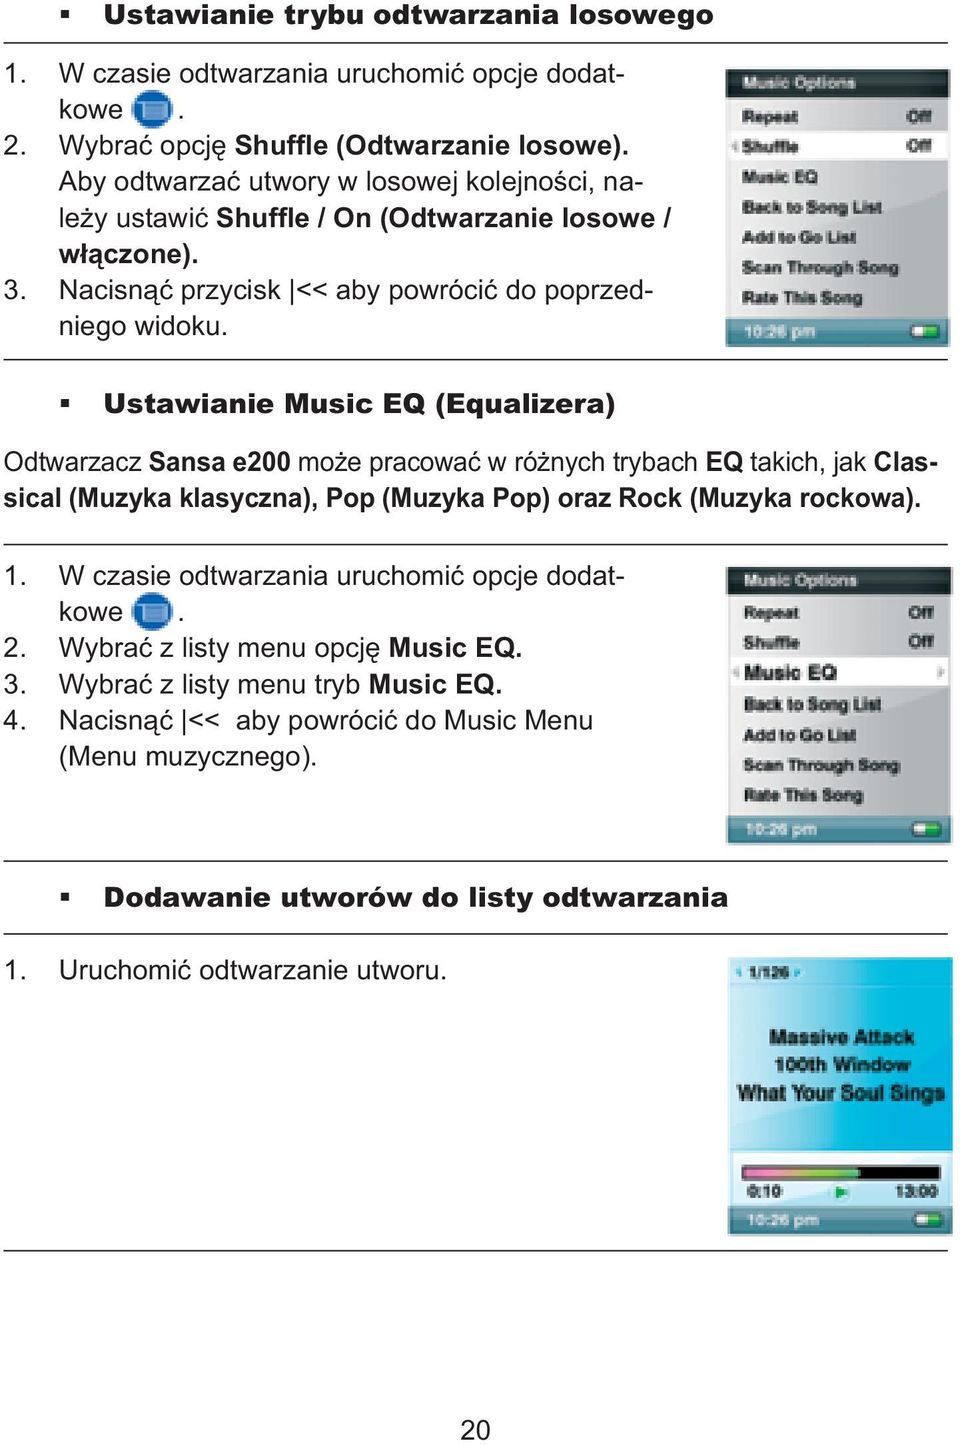 Ustawianie Music EQ (Equalizera) Odtwarzacz Sansa e200 może pracować w różnych trybach EQ takich, jak Classical (Muzyka klasyczna), Pop (Muzyka Pop) oraz Rock (Muzyka rockowa). 1.